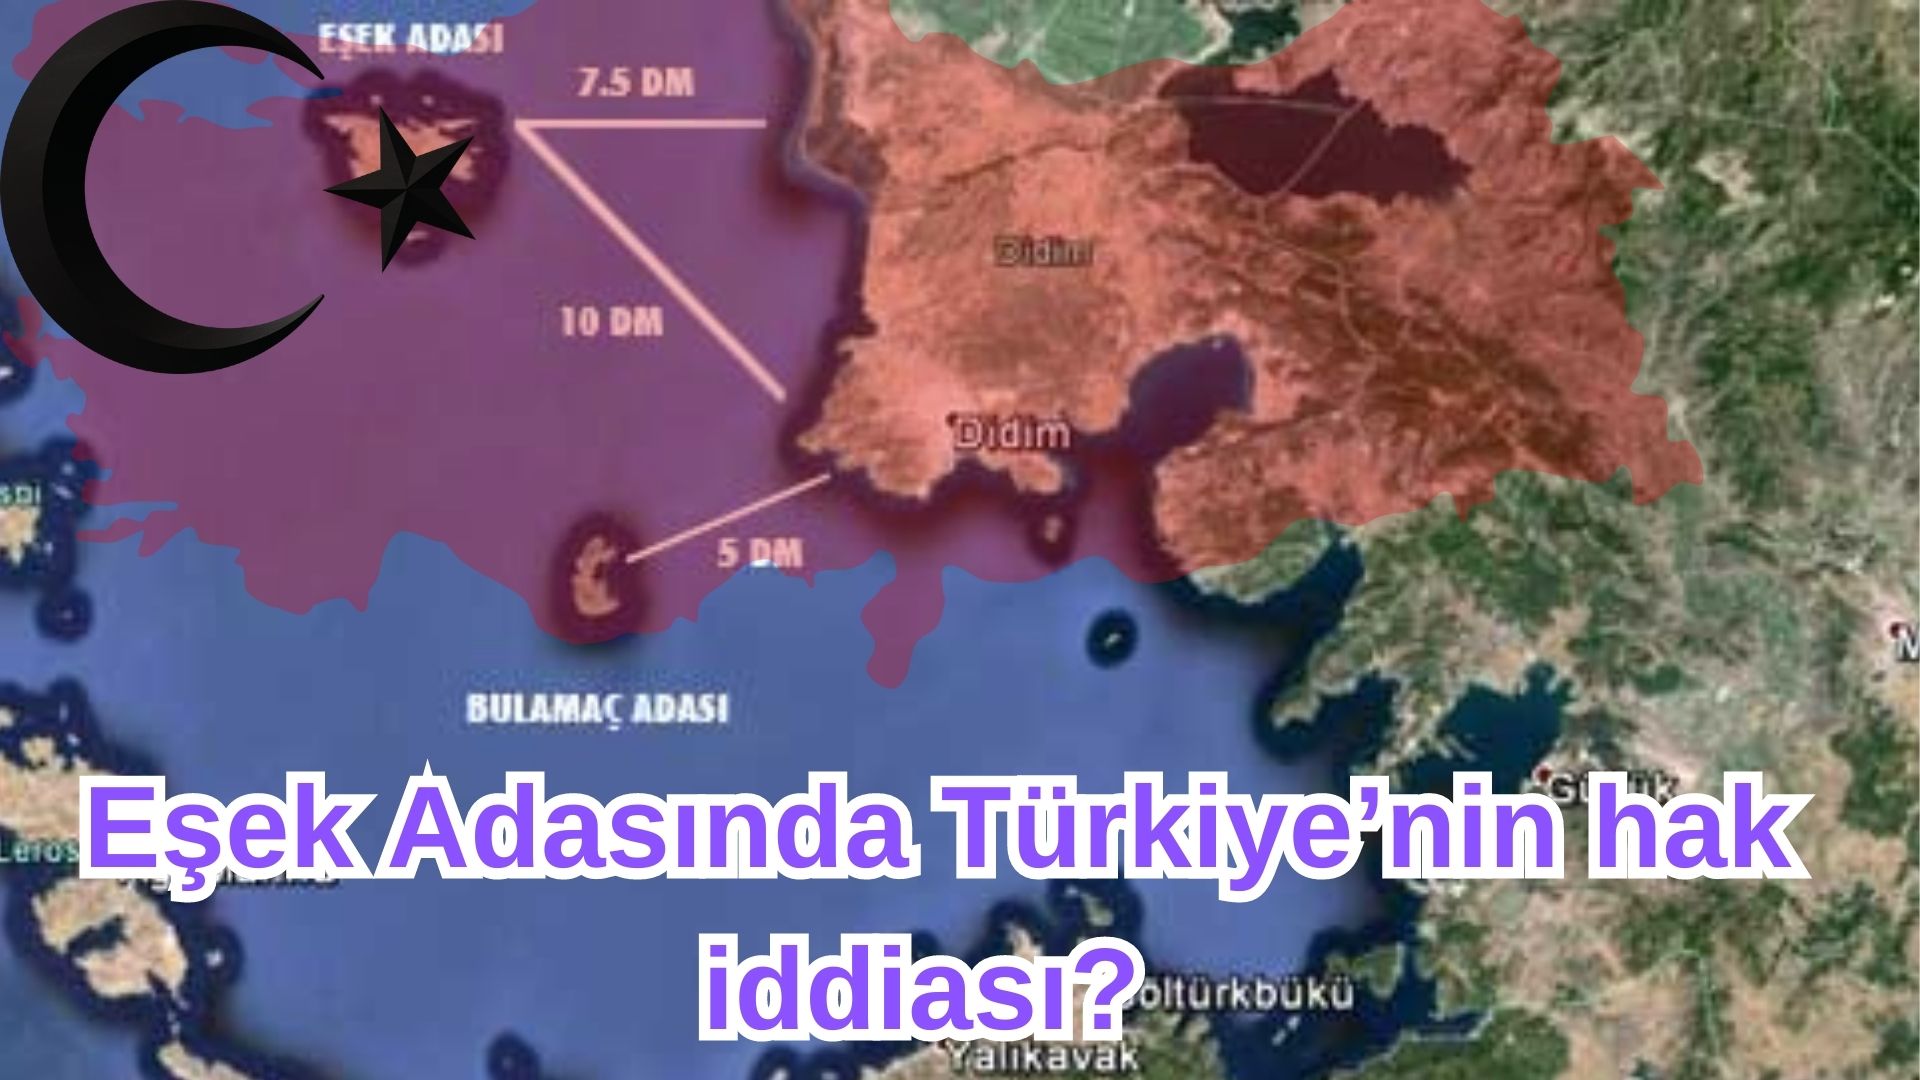 _Eşek Adasında Türkiye’nin hak iddiası (1)